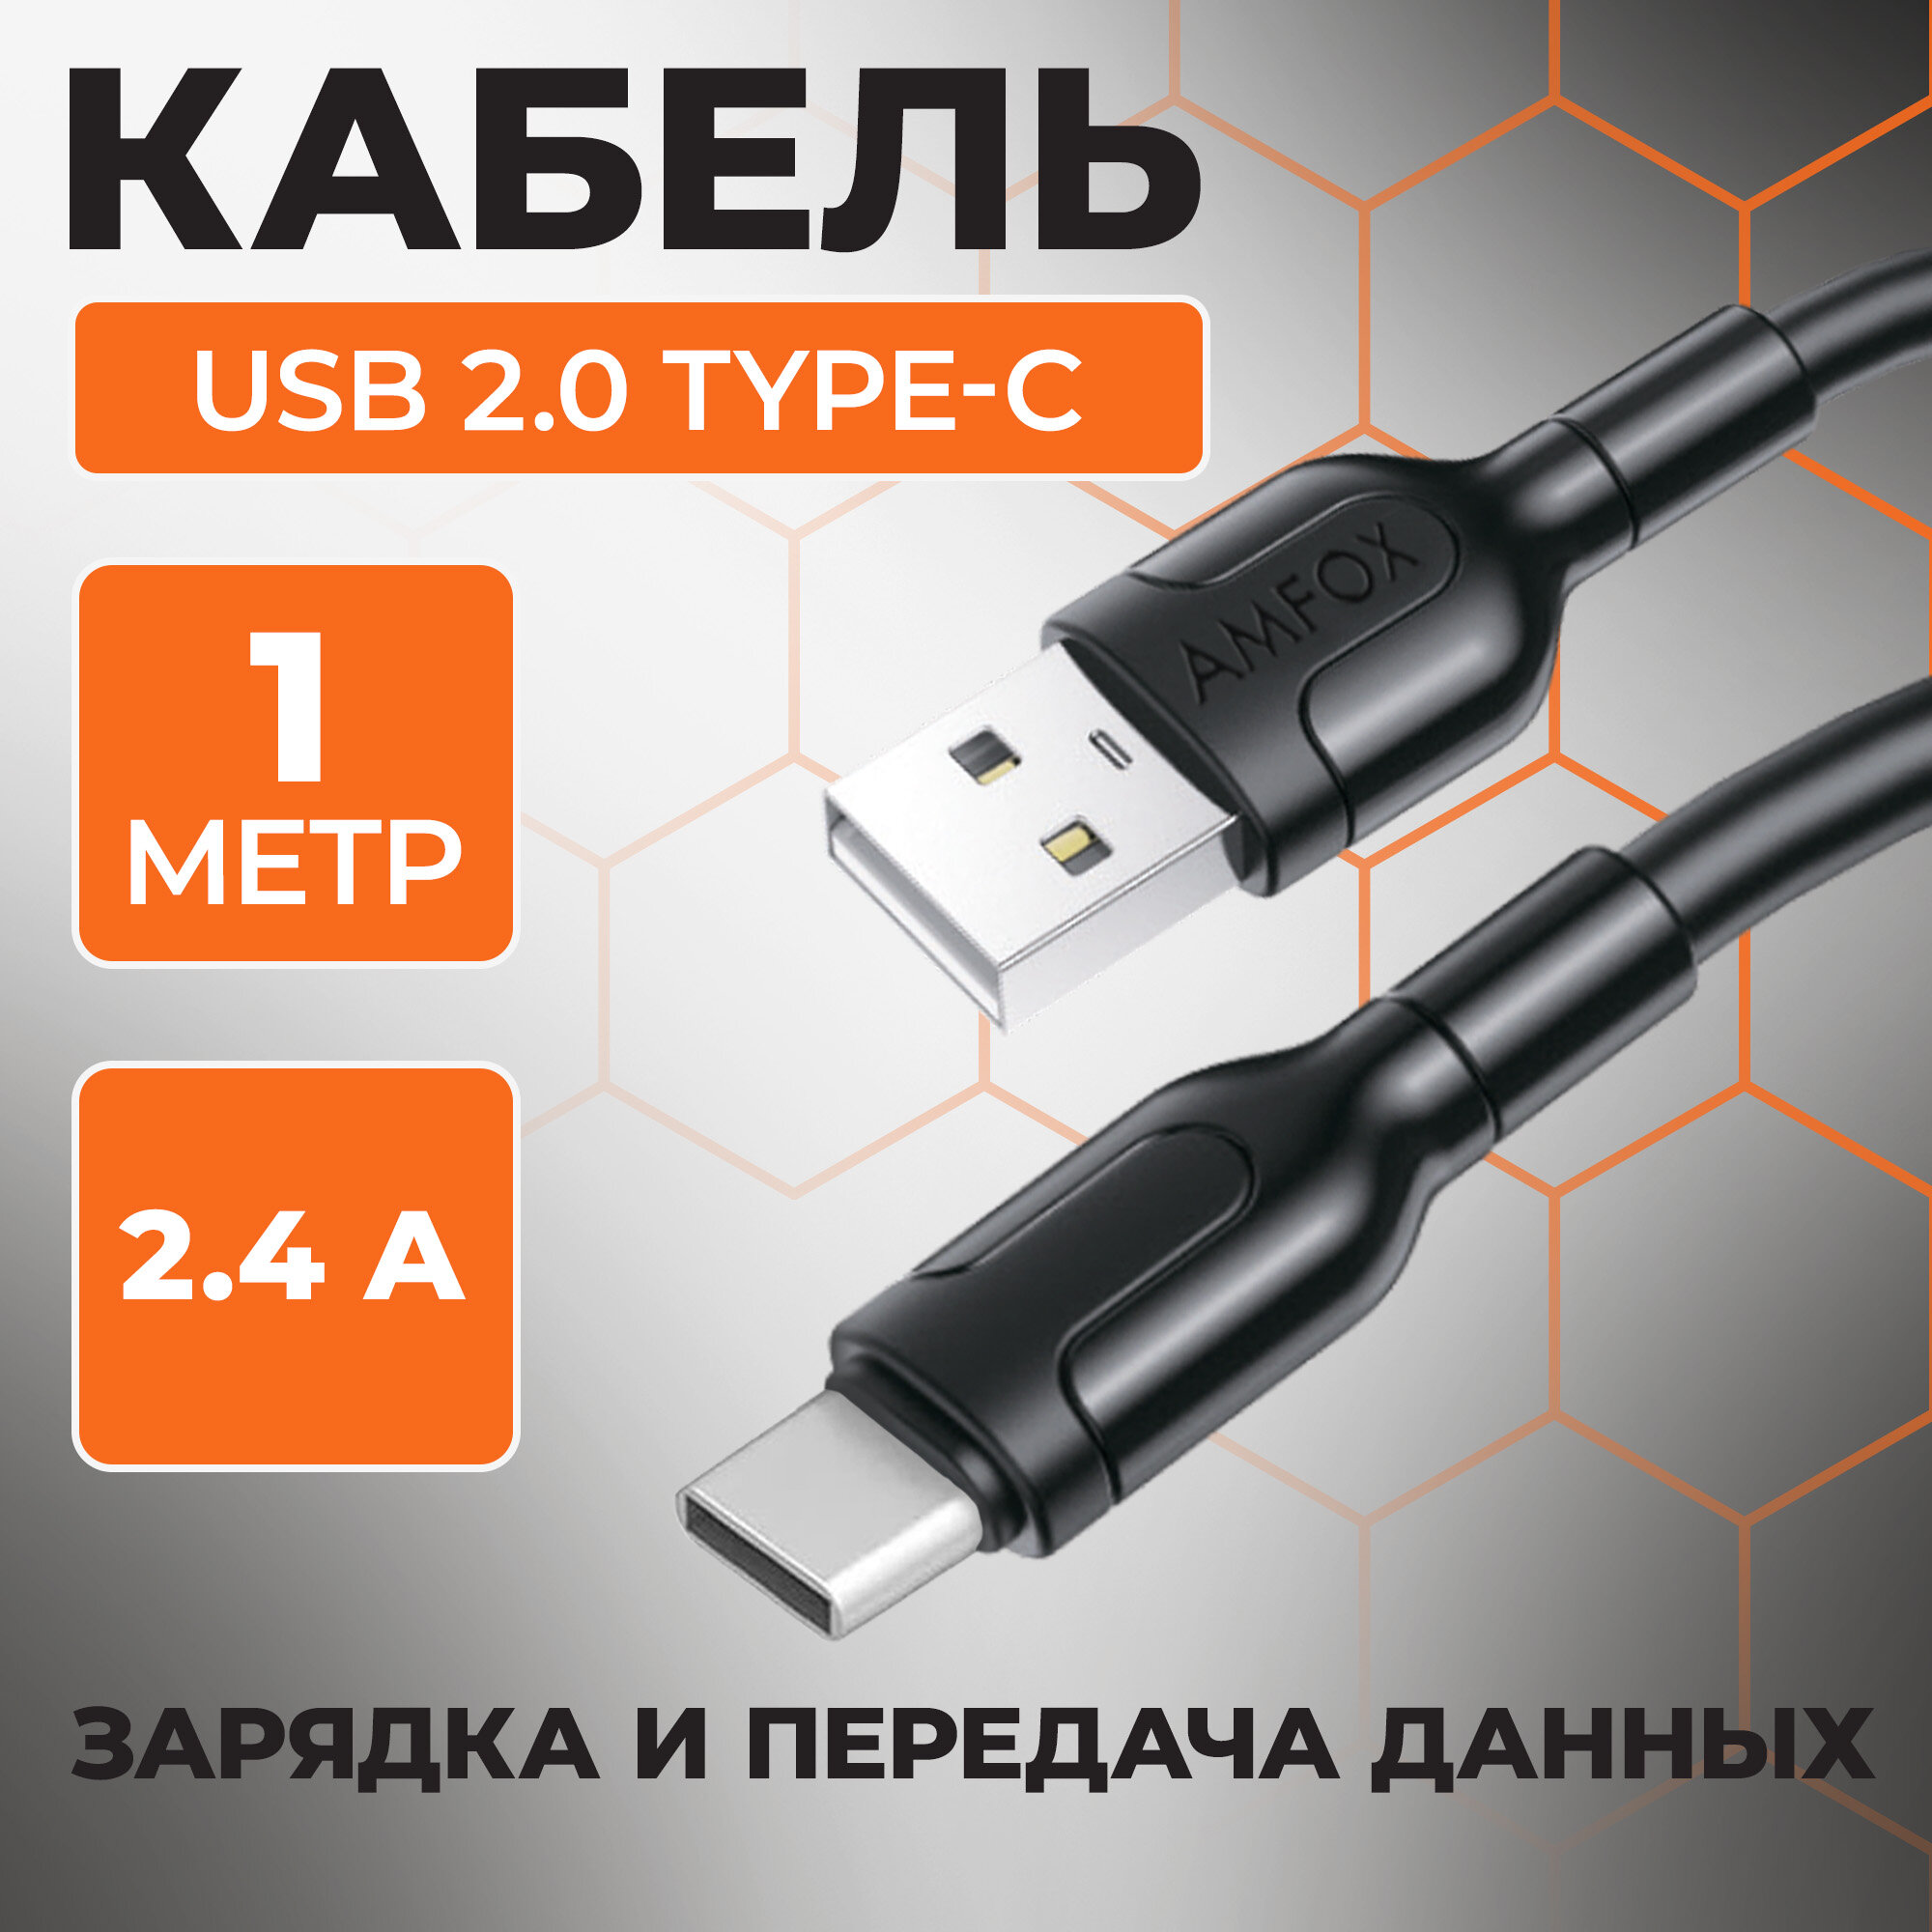 Кабель USB с быстрой зарядкой и передачей данных, AMFOX, C11, 2.1А, Lightning, провод для зарядки айфона, шнур лайтининг, юсб для Iphone Apple, черный